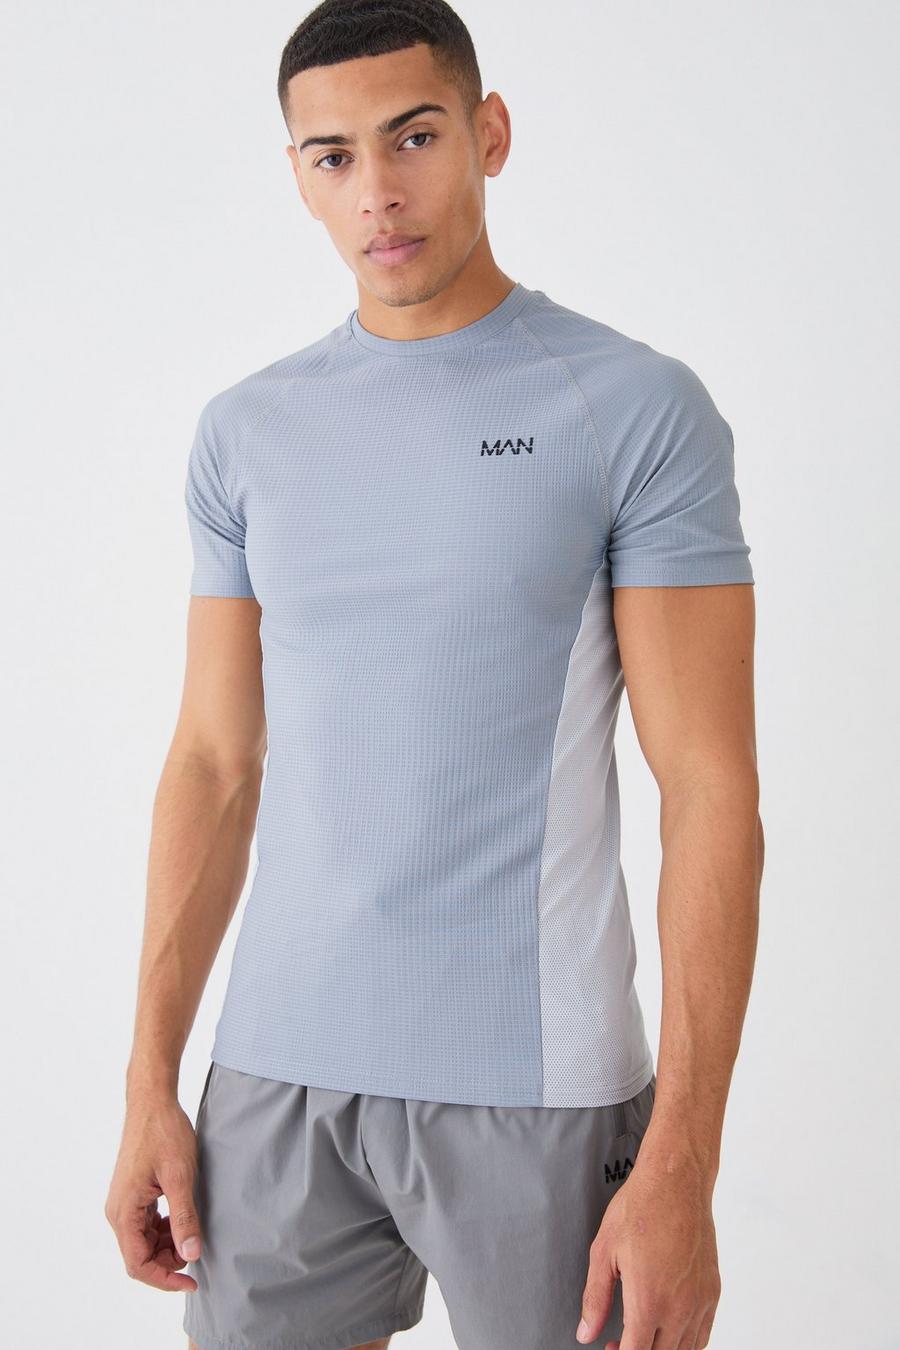 Charcoal grau Man Active Muscle Fit Colour Block T-shirt